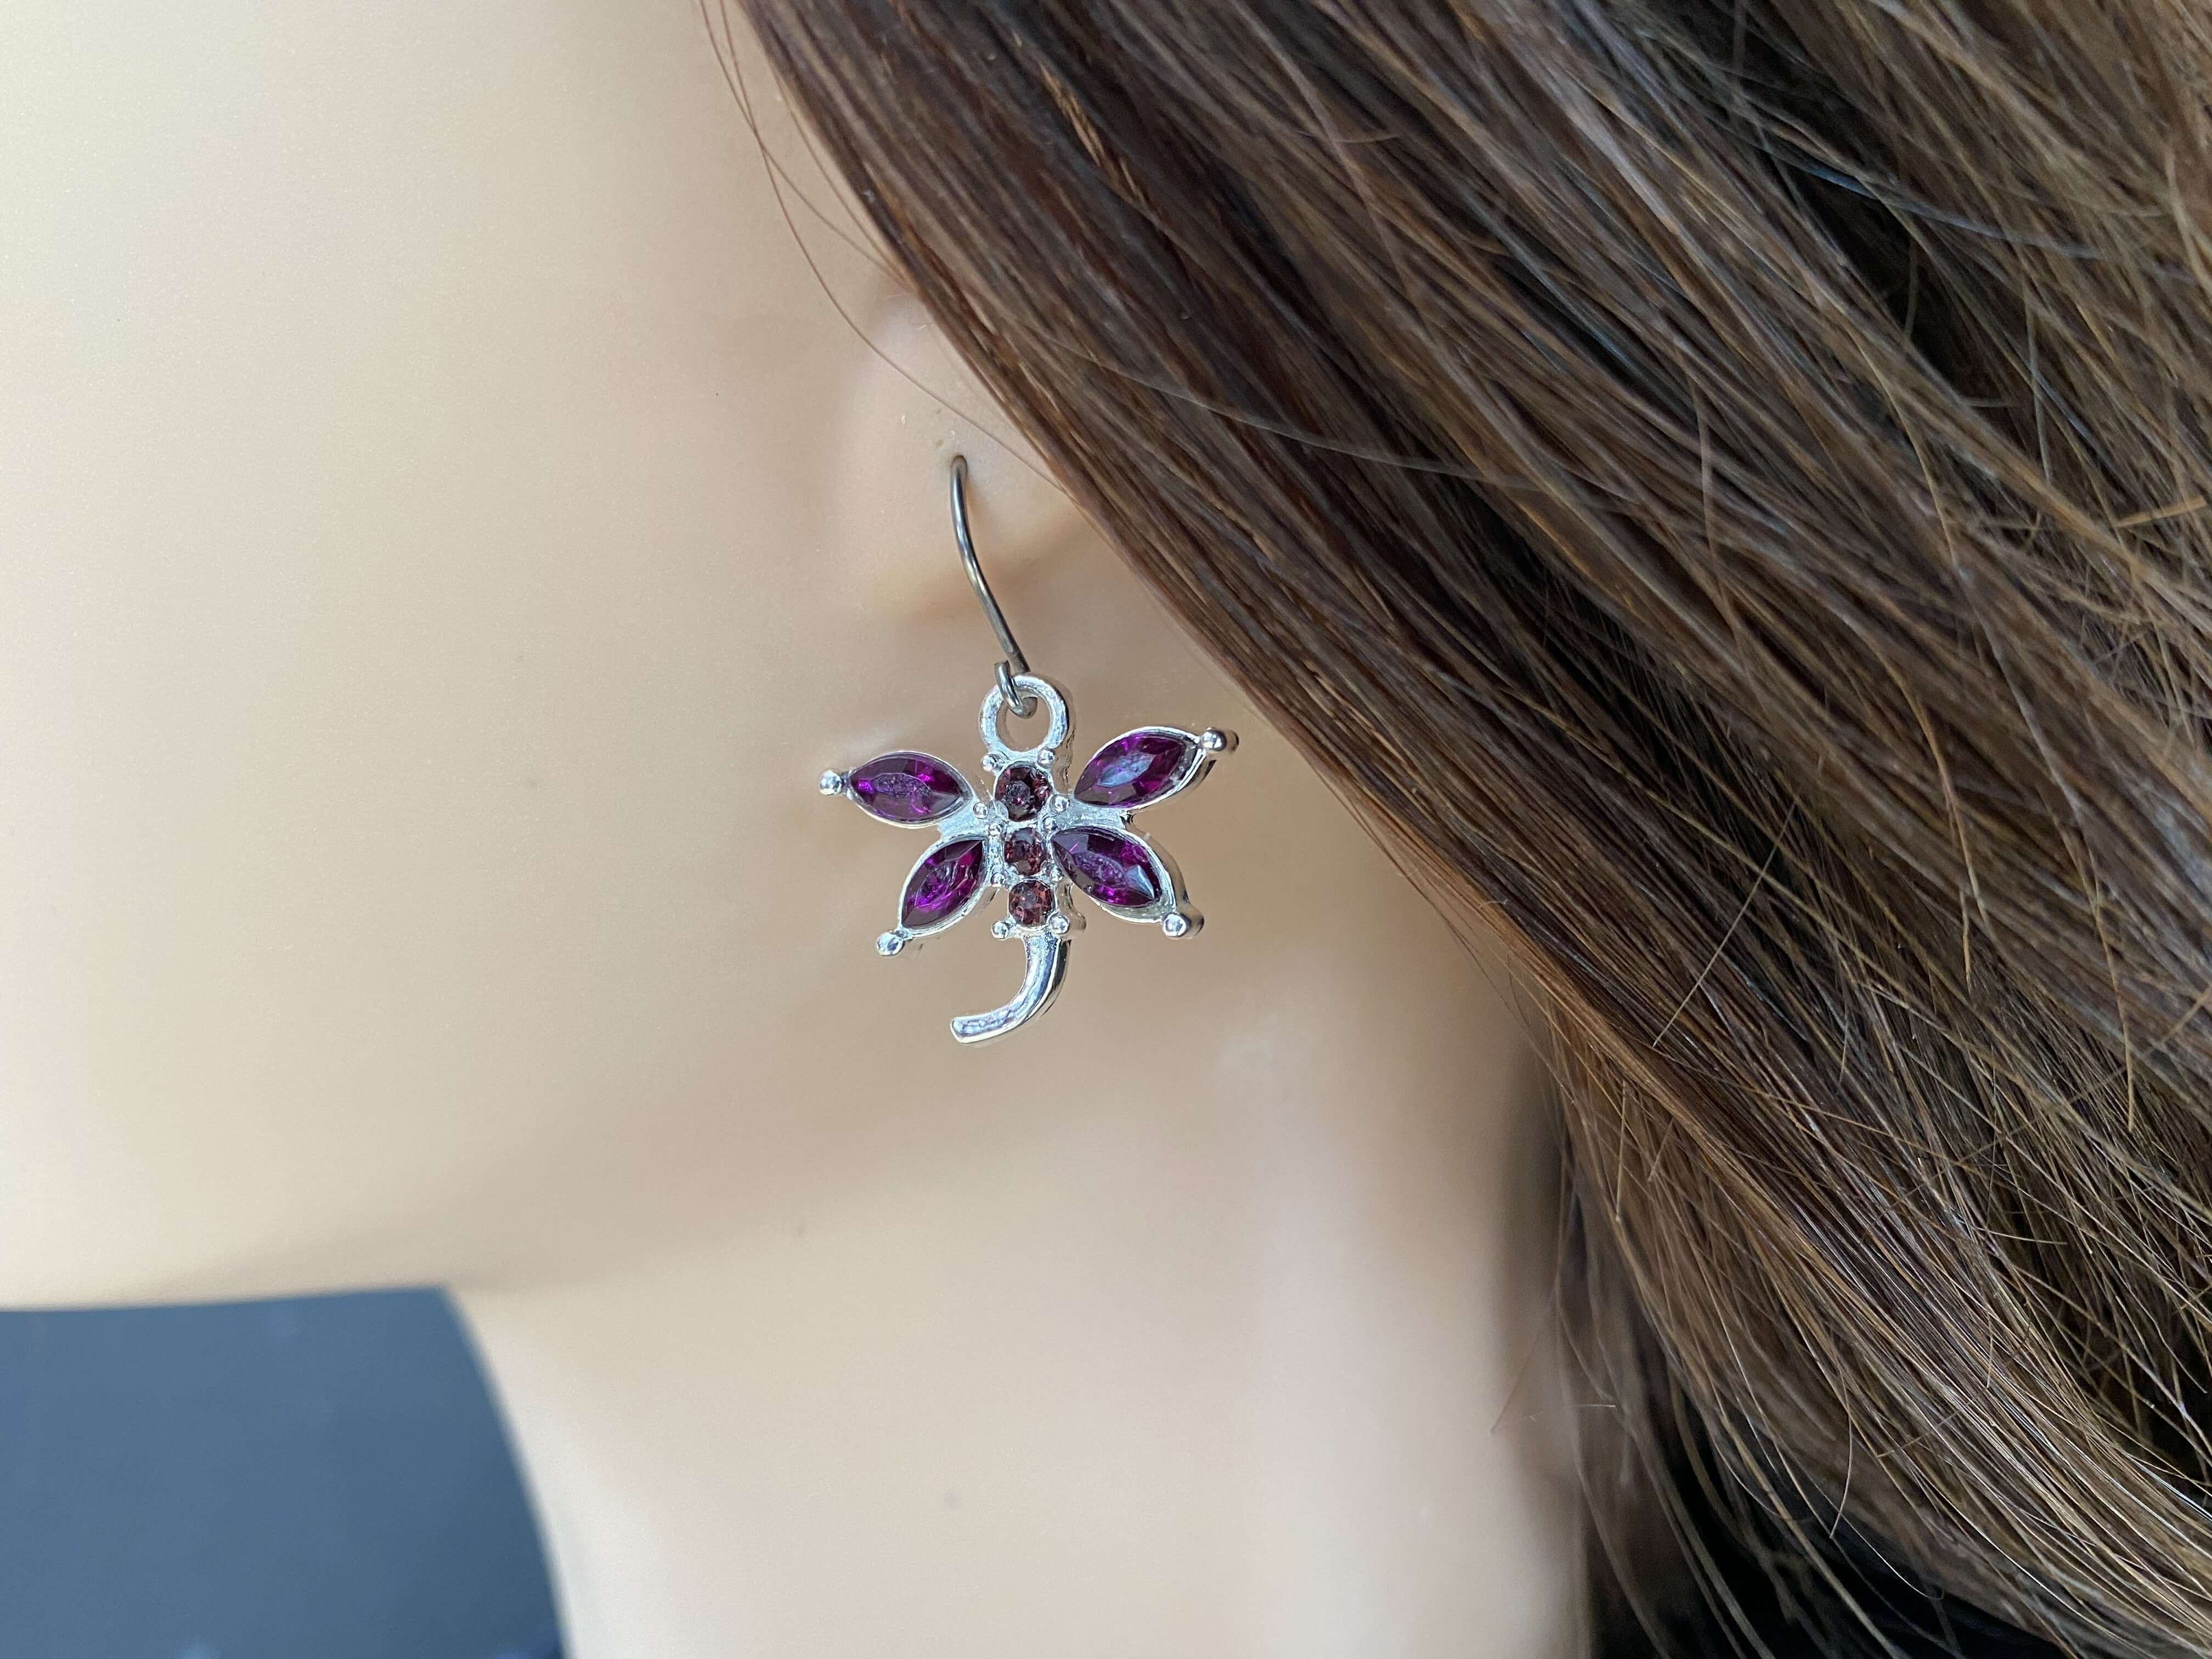 Bejewelled Dragonfly purple on ear